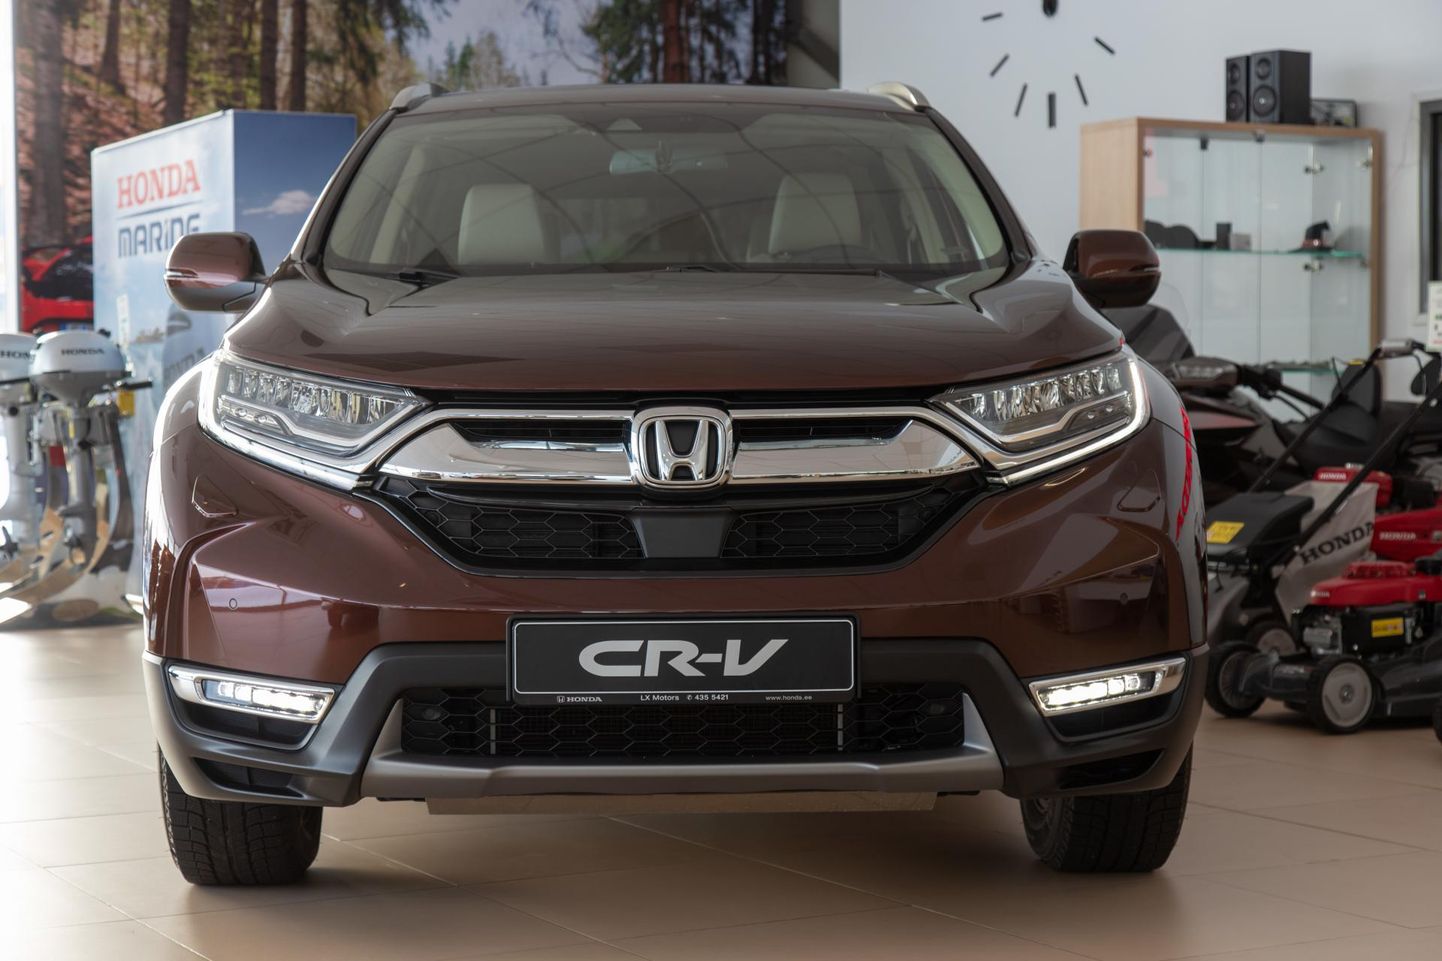 Honda CR-V-d võib pidada uutest autodest üheks ostetumaks mudeliks Viljandis. Neid läks mullu LX Motorsis kaubaks 41.